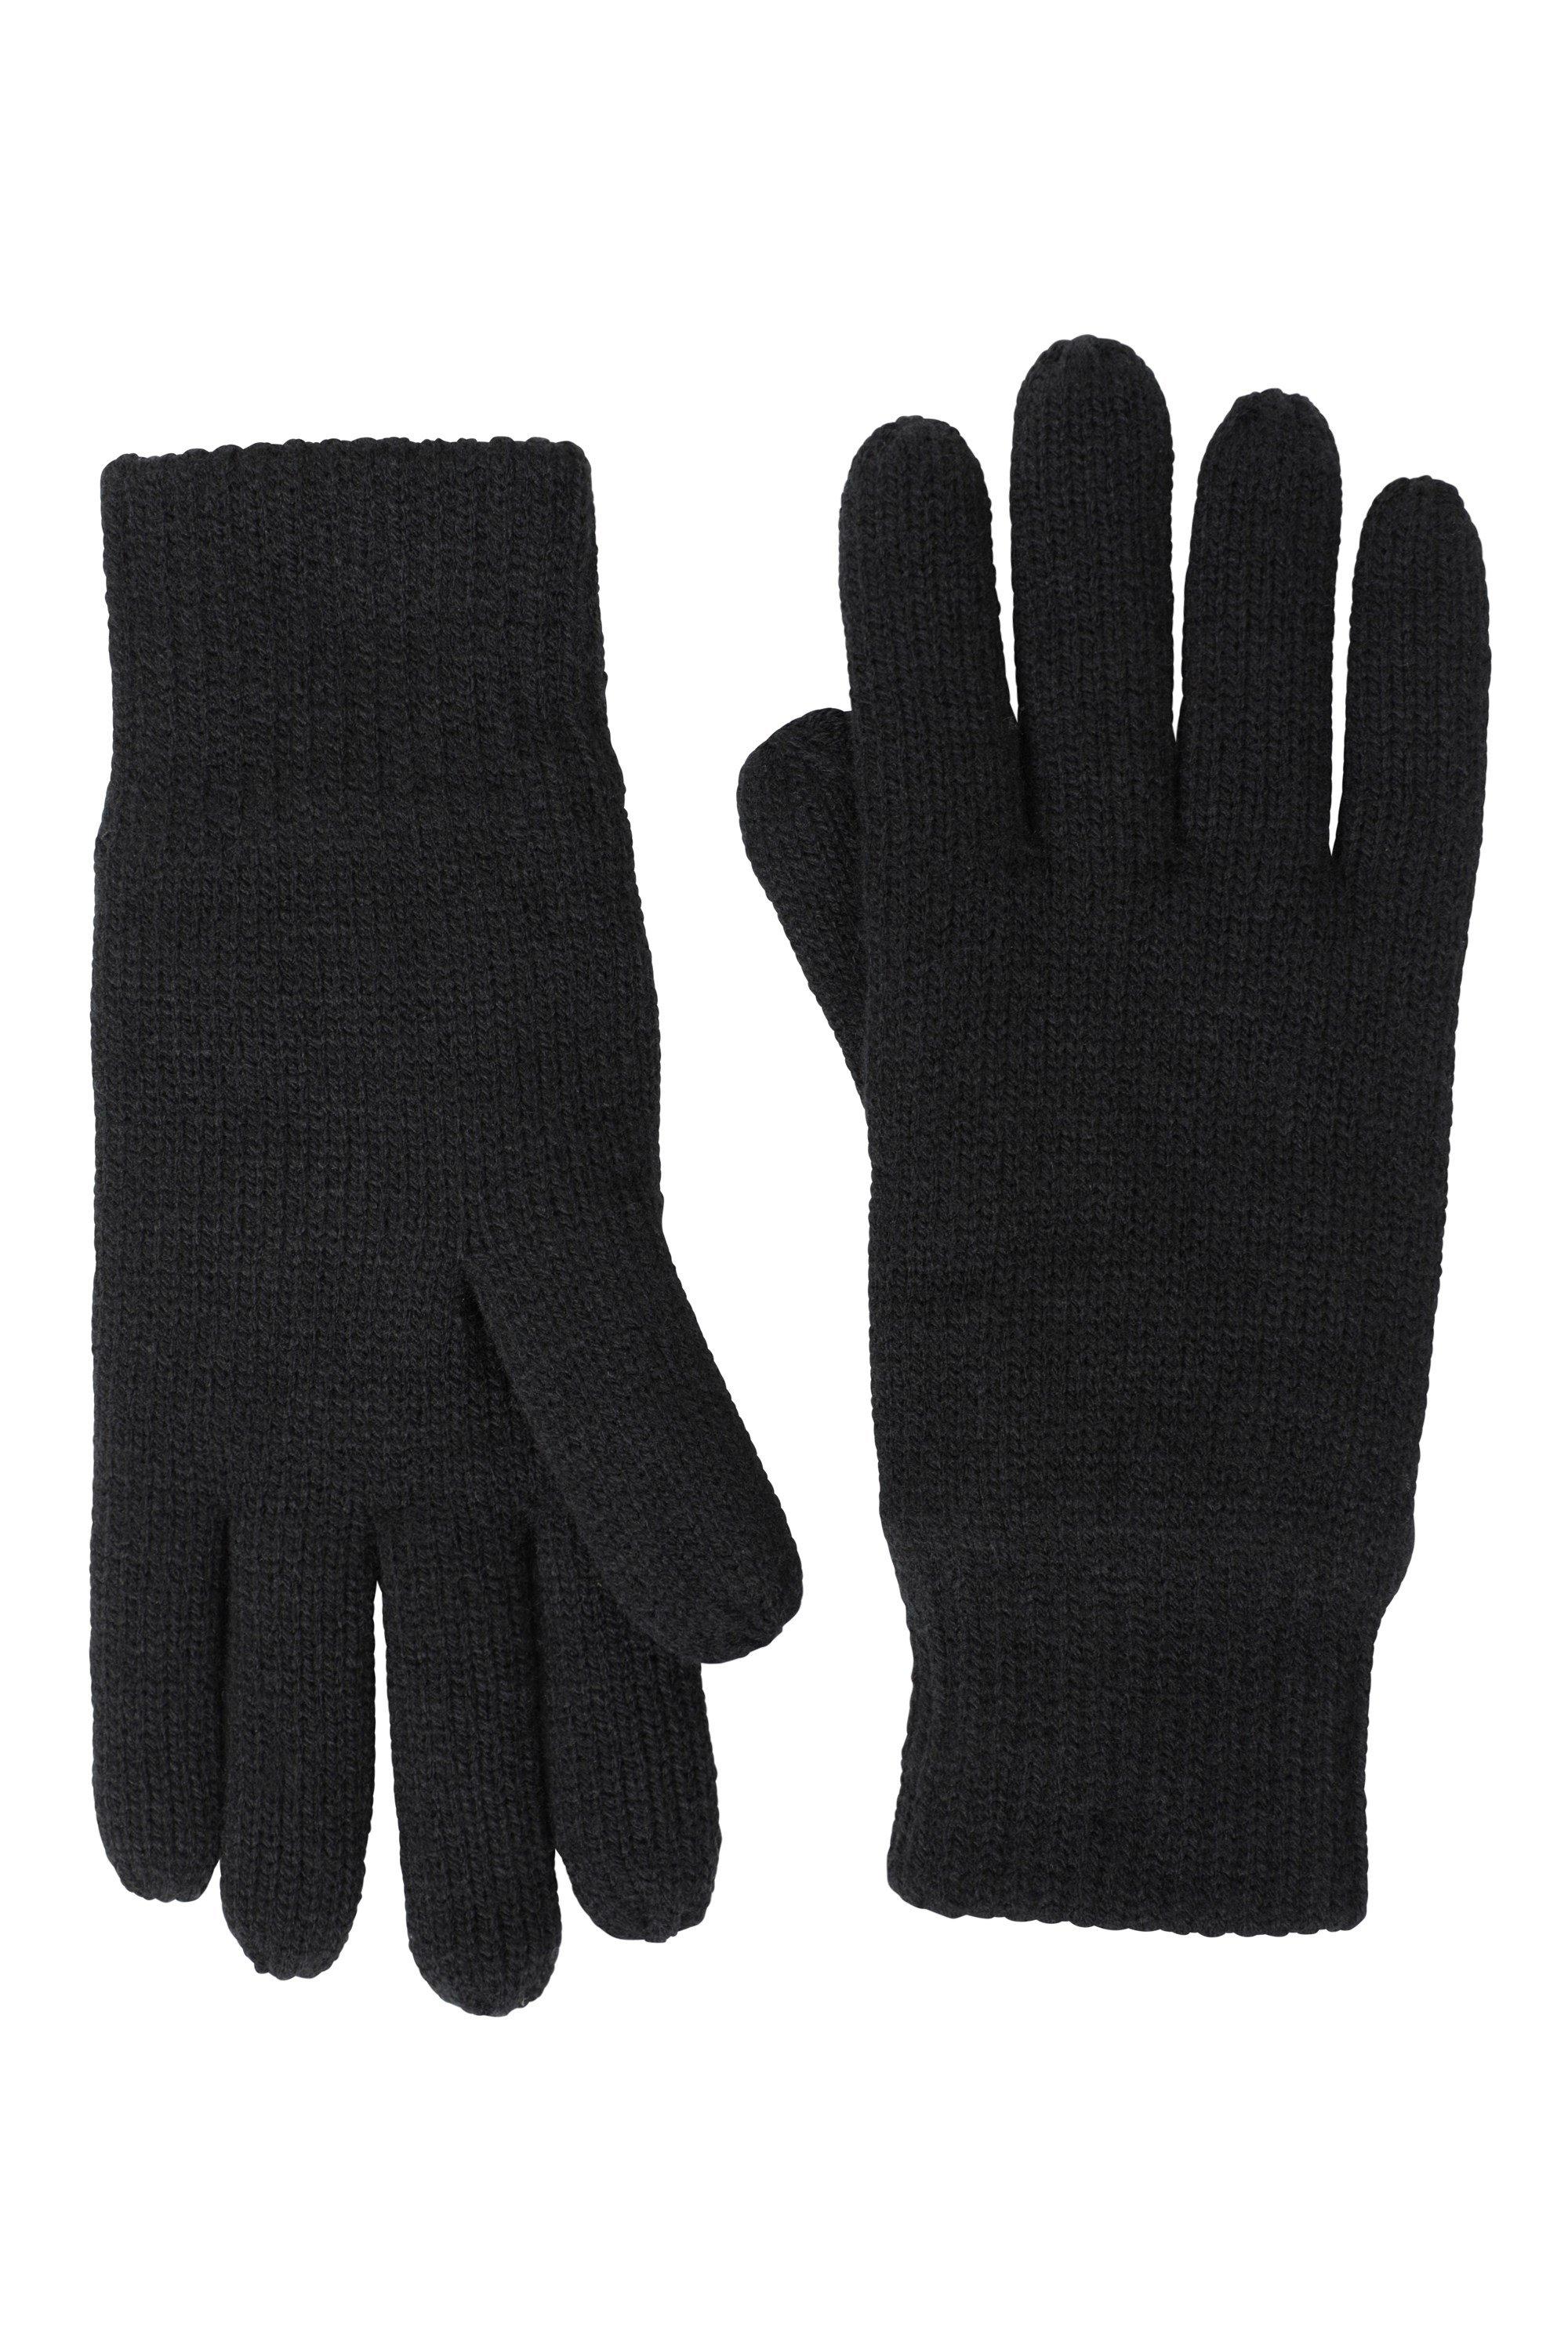 Thinsulate Glove Утепленные вязаные теплые перчатки Mountain Warehouse, черный единорог перчатка трикотажные зимние теплые мягкие перчатки mountain warehouse фиолетовый